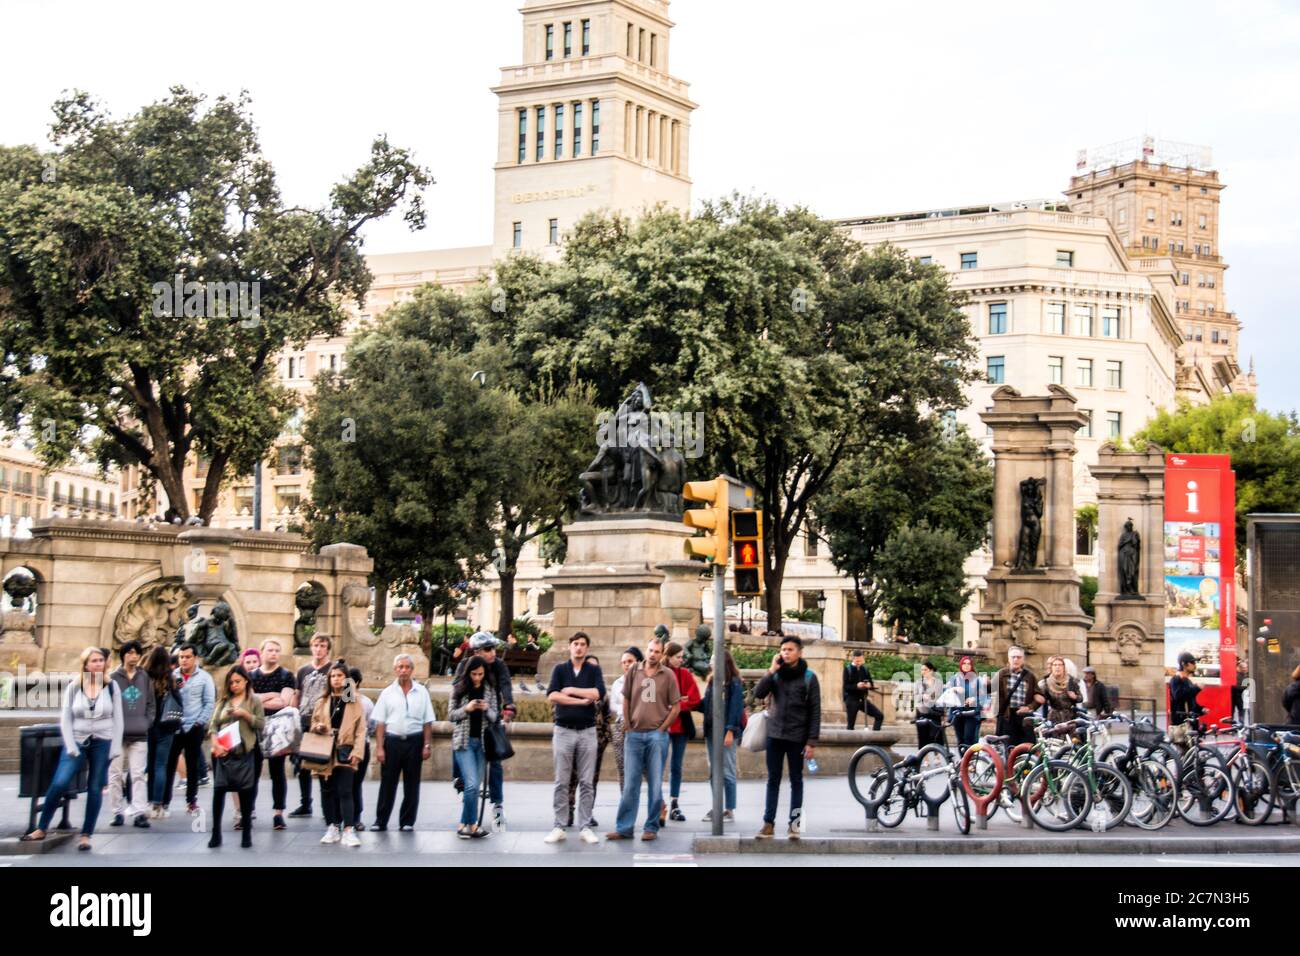 Bikers and walkers at the Plaza de Cataluna, Barcelona, Spain. Stock Photo